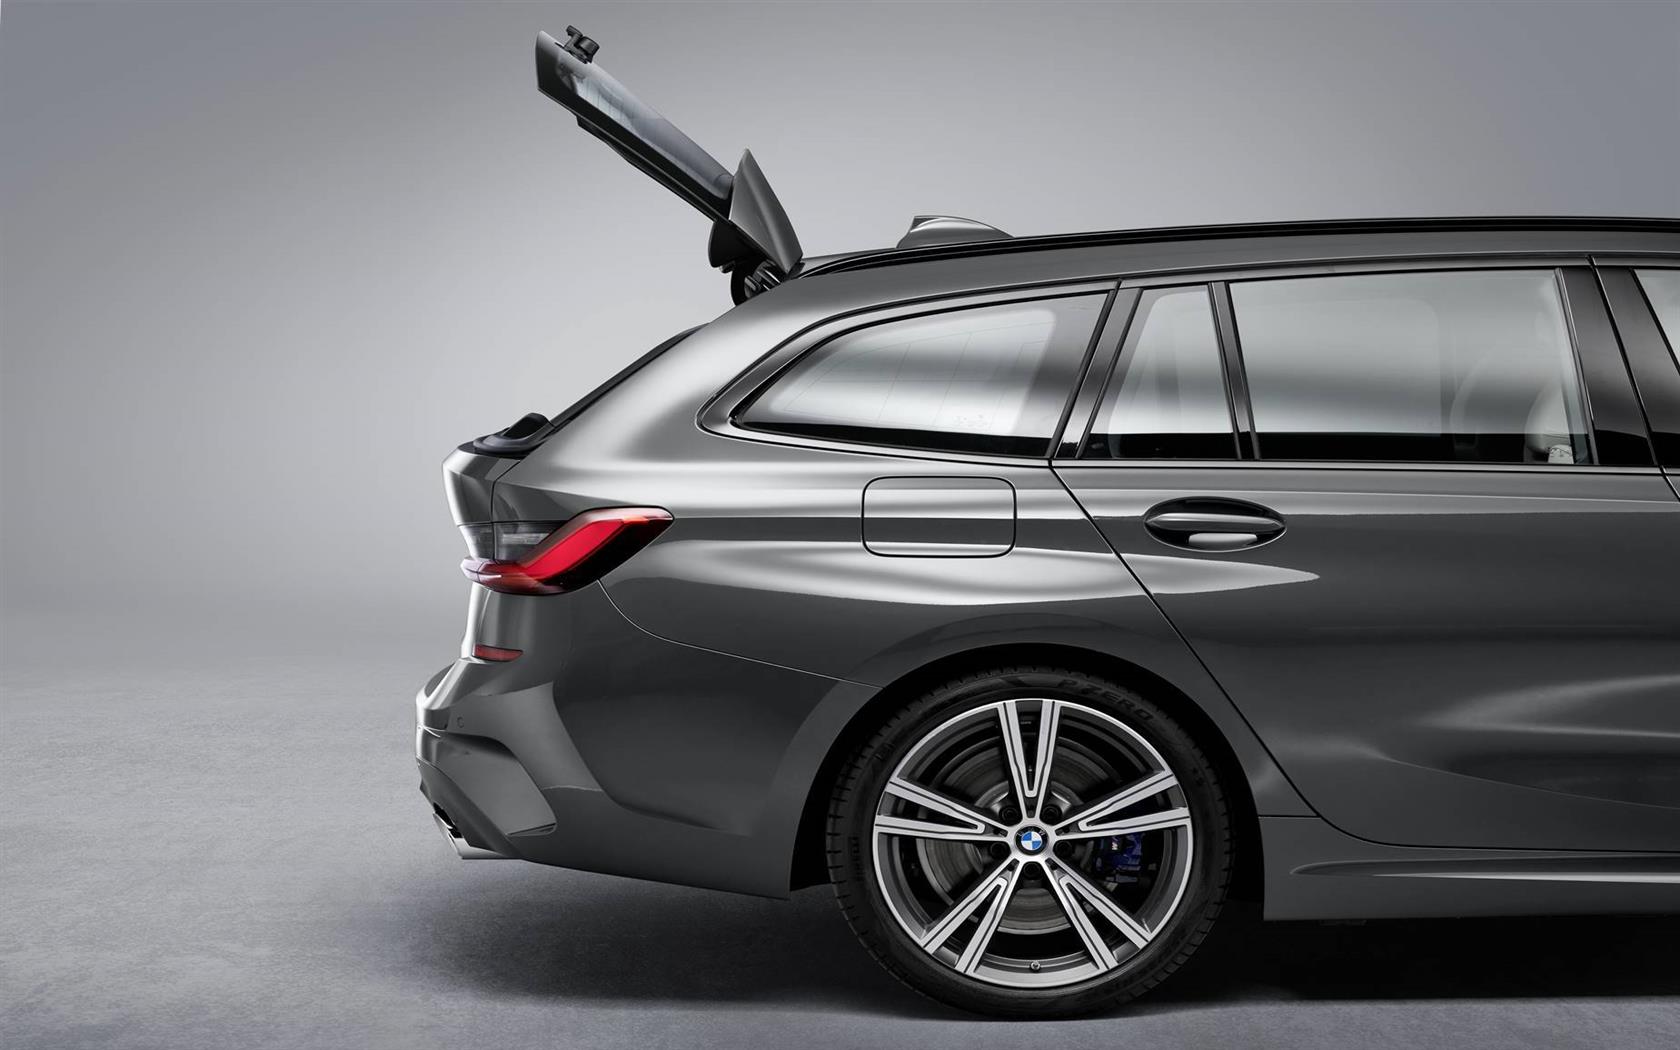 2019 BMW 3 Series Touring